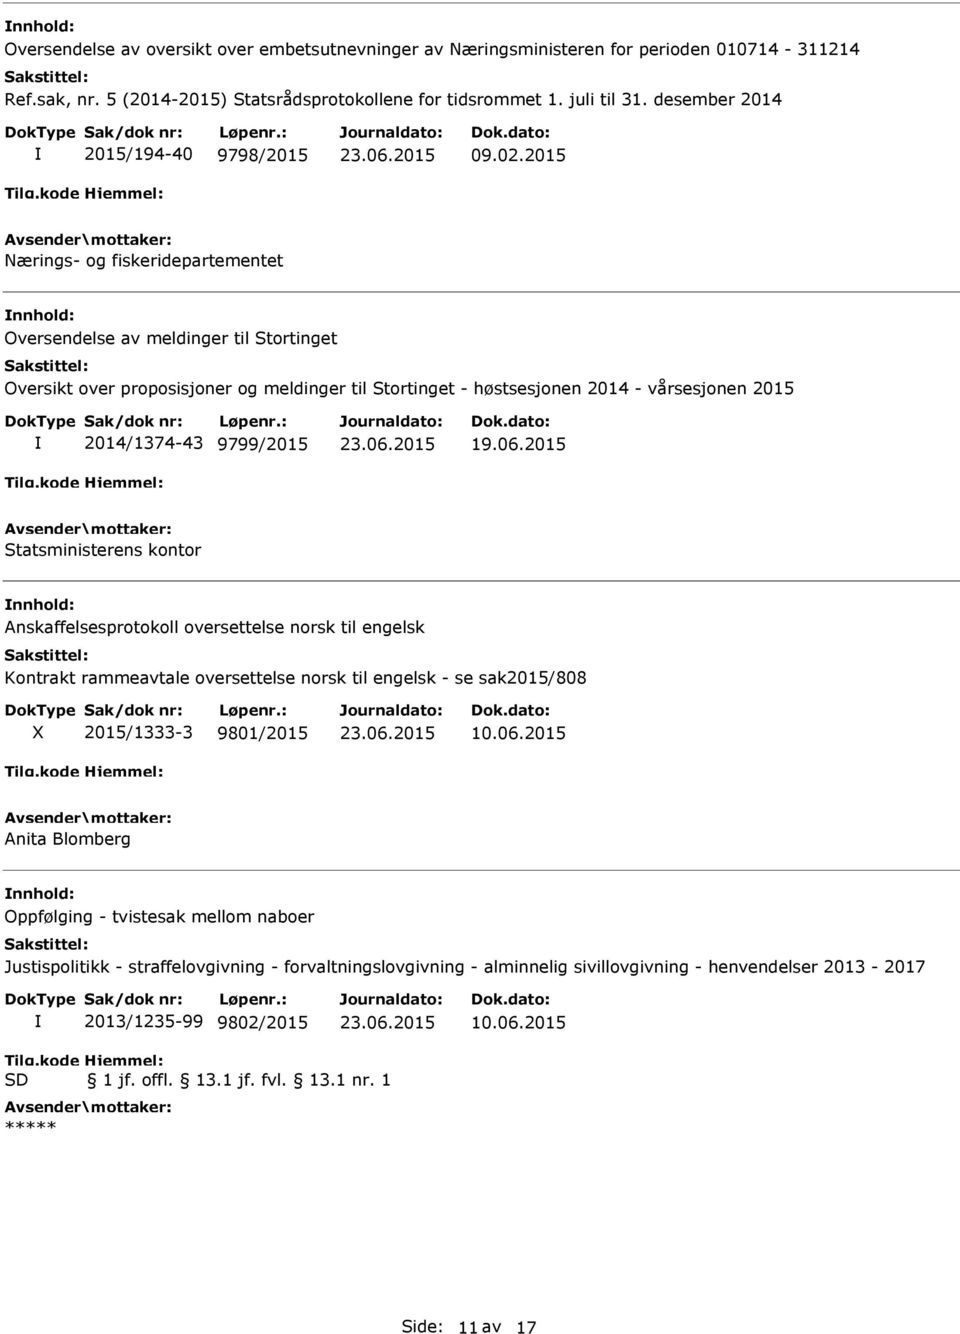 2014/1374-43 9799/2015 Statsministerens kontor Anskaffelsesprotokoll oversettelse norsk til engelsk Kontrakt rammeavtale oversettelse norsk til engelsk - se sak2015/808 X